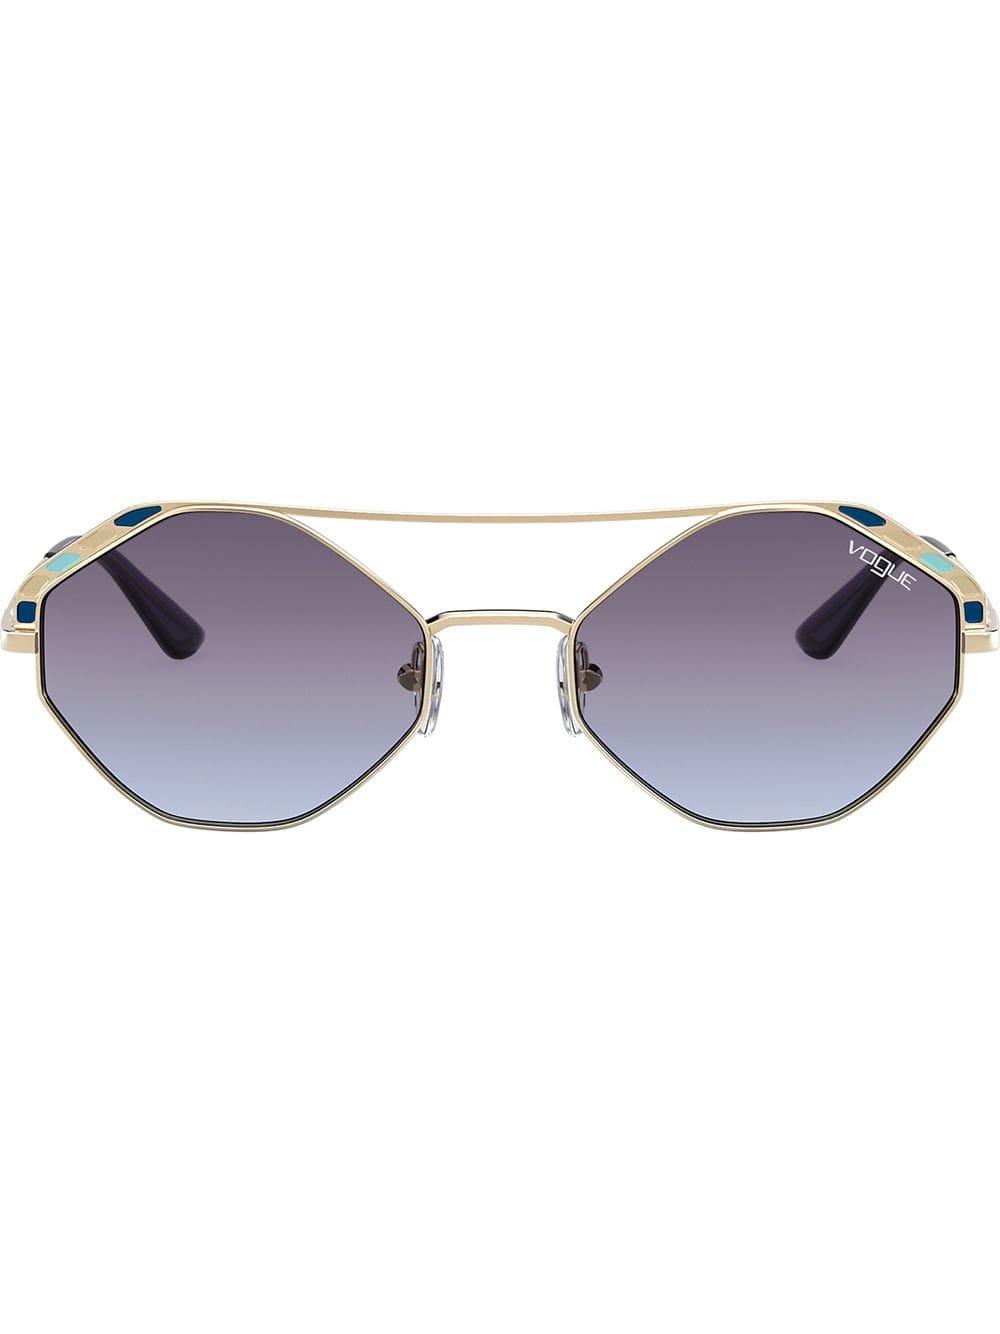 Vogue Eyewear Round Frame Sunglasses in Gold (Metallic) - Lyst